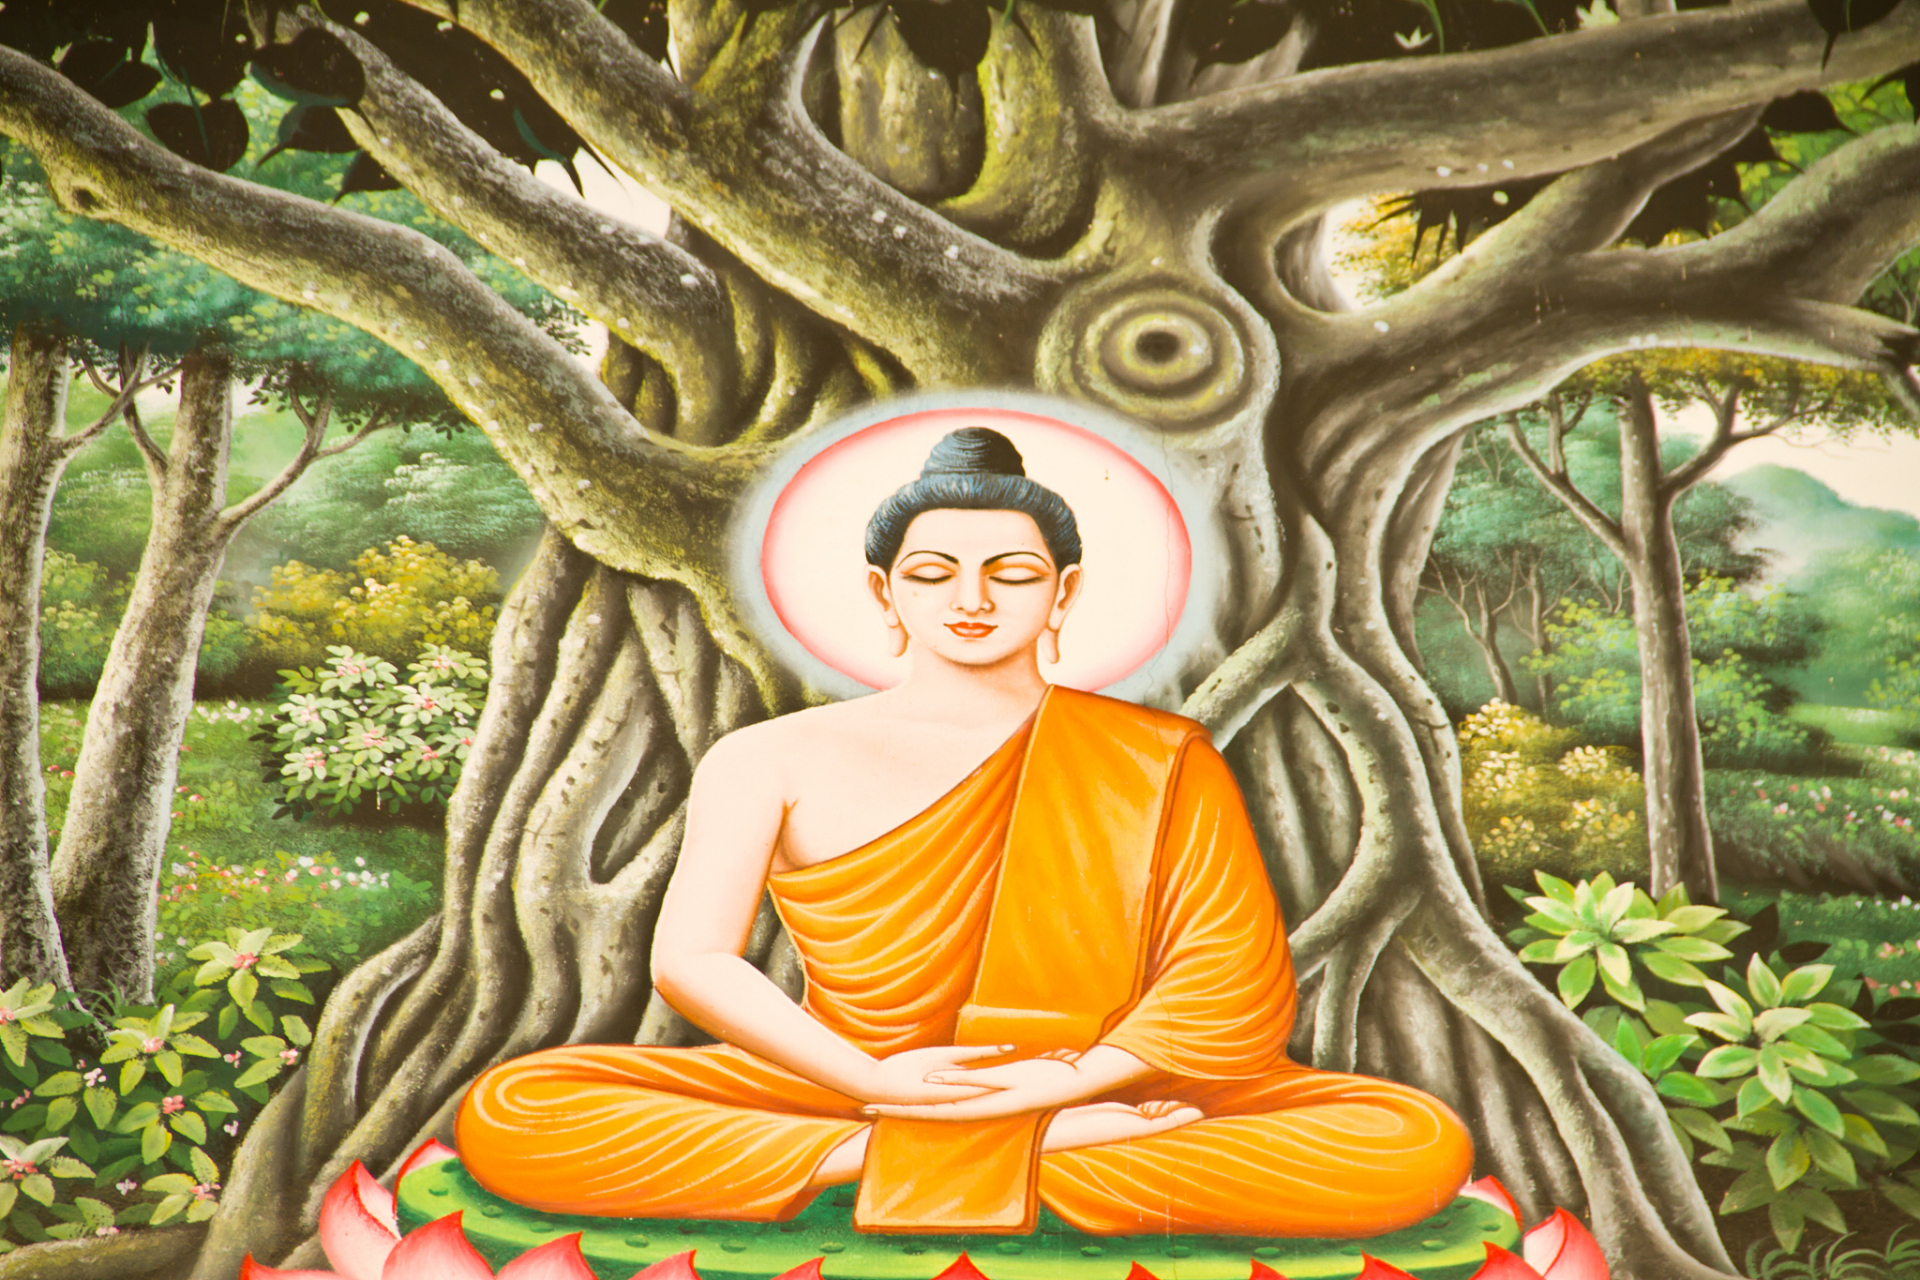 佛教创始人释迦牟尼,常被人们尊称为佛陀,即觉者